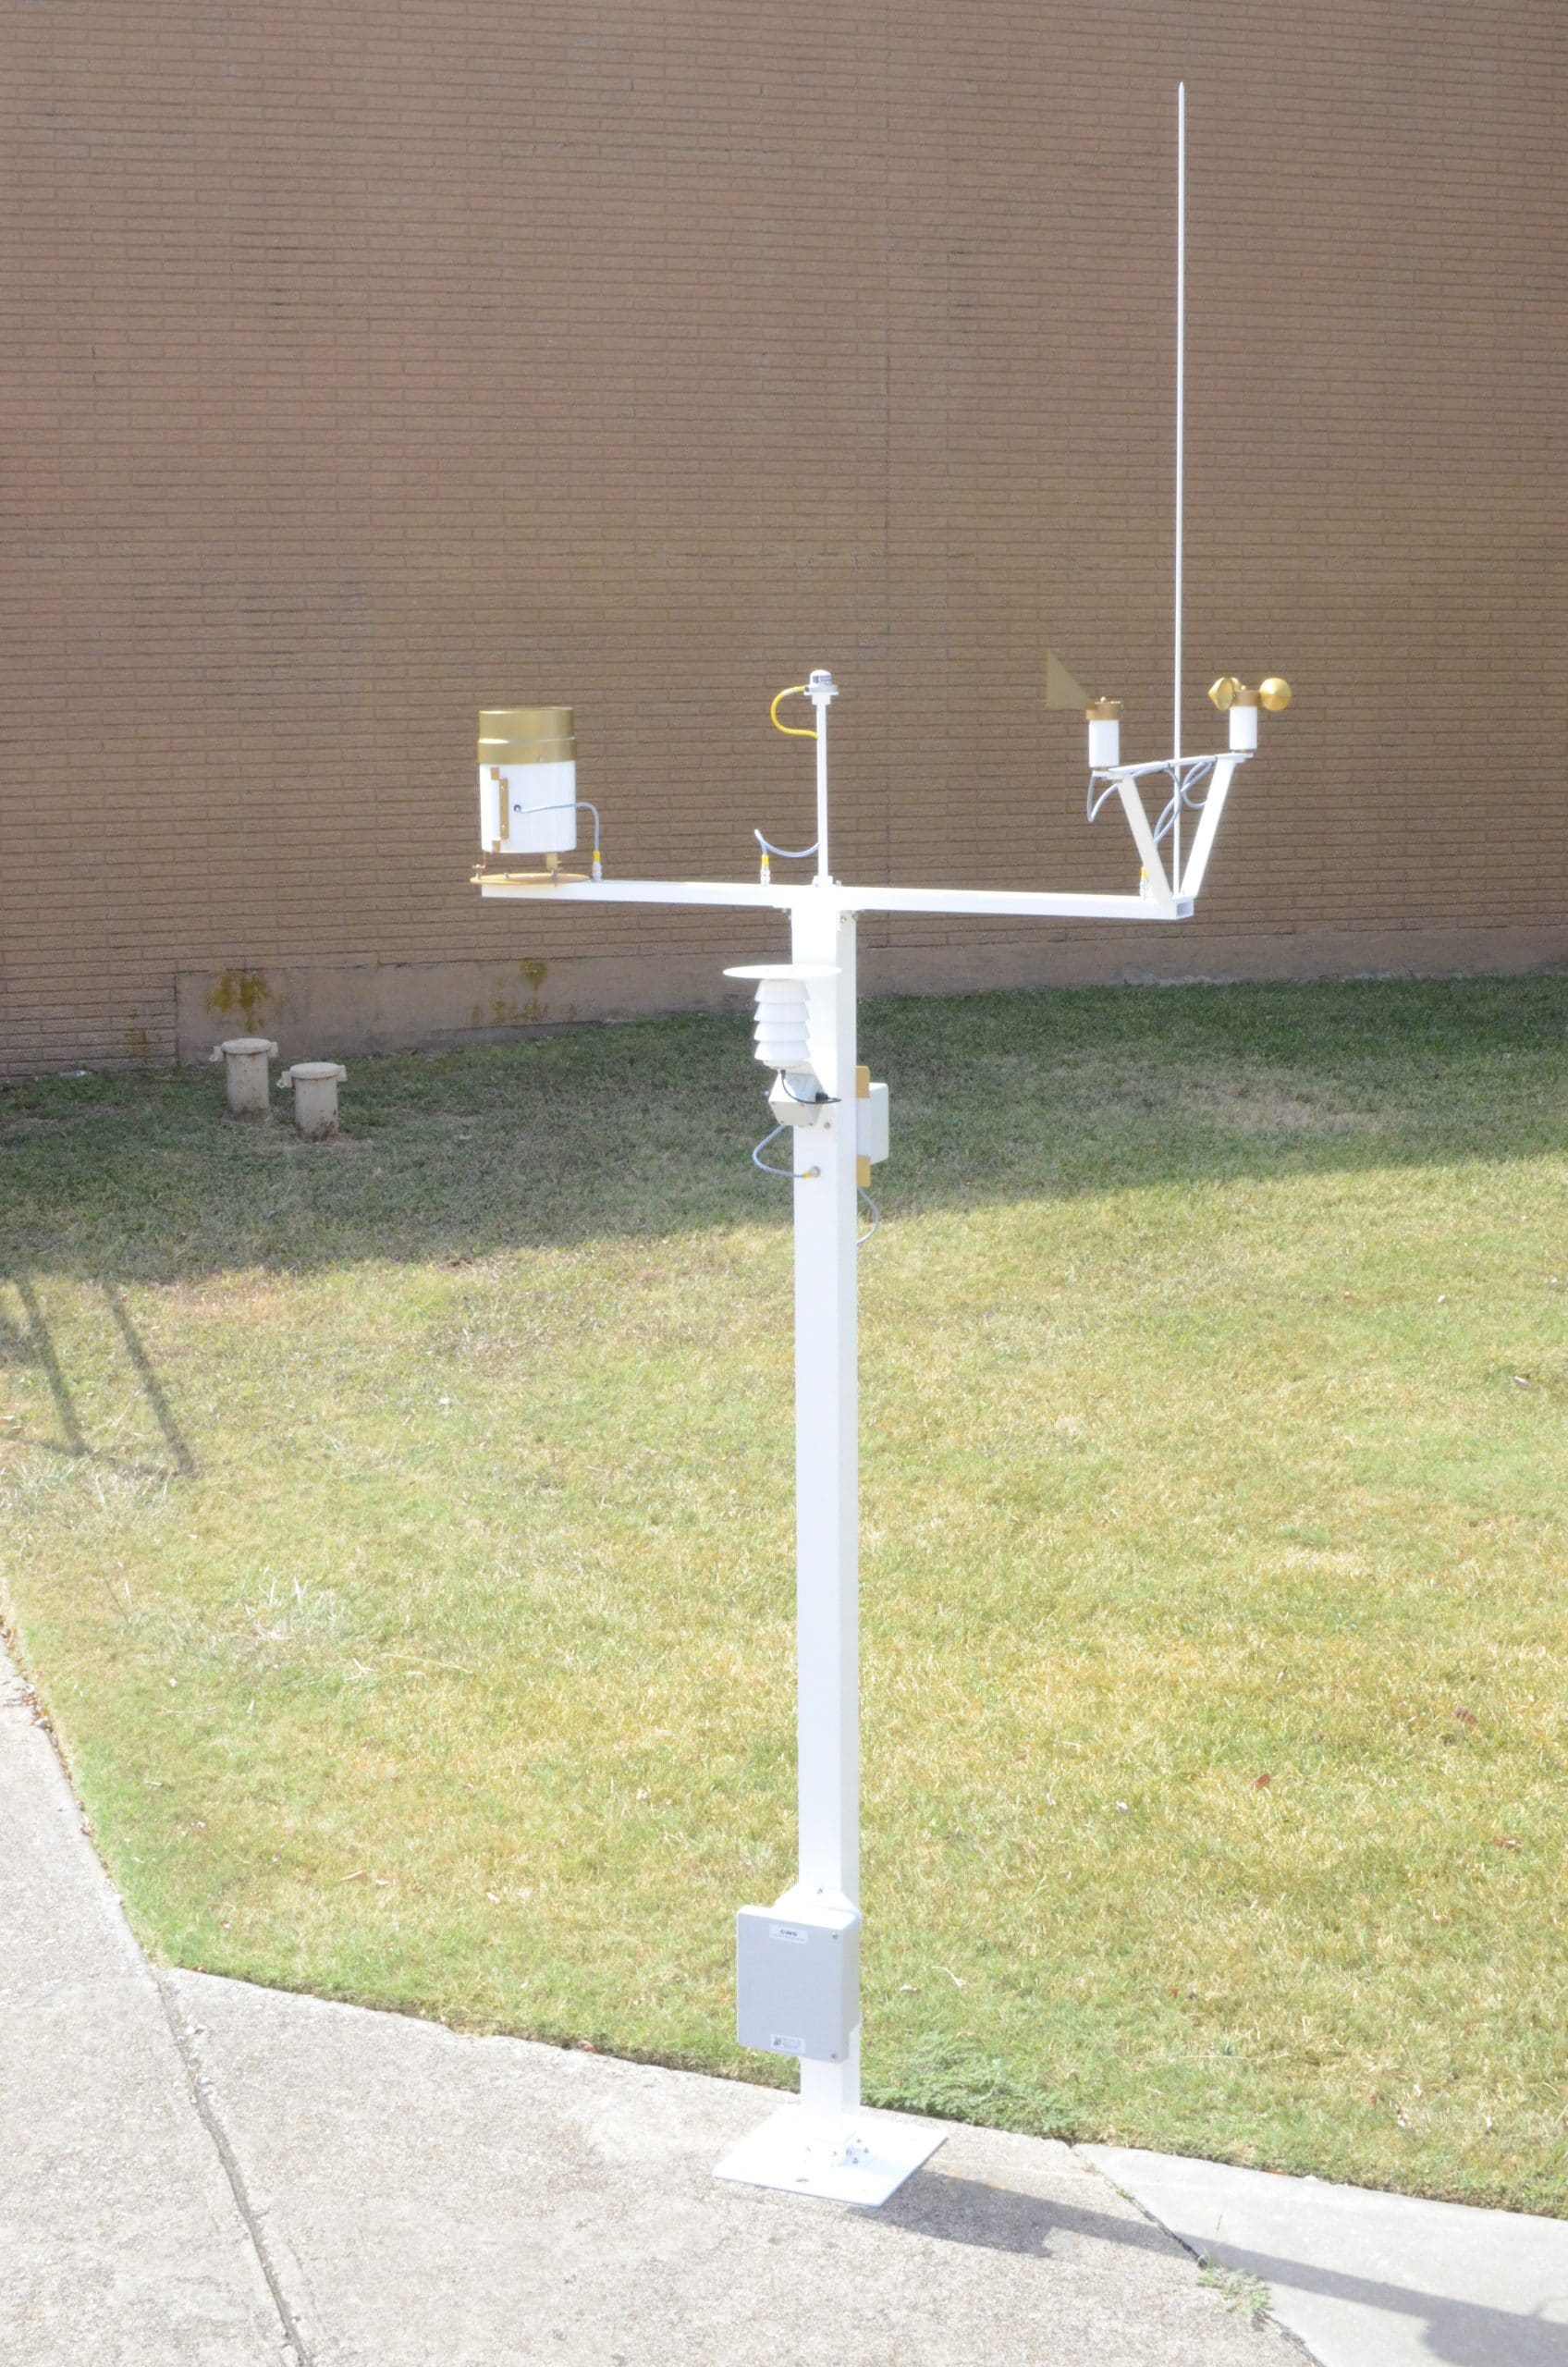 Estacion meteorologica – Instrumentación ambiental medición y control gases  contaminantes